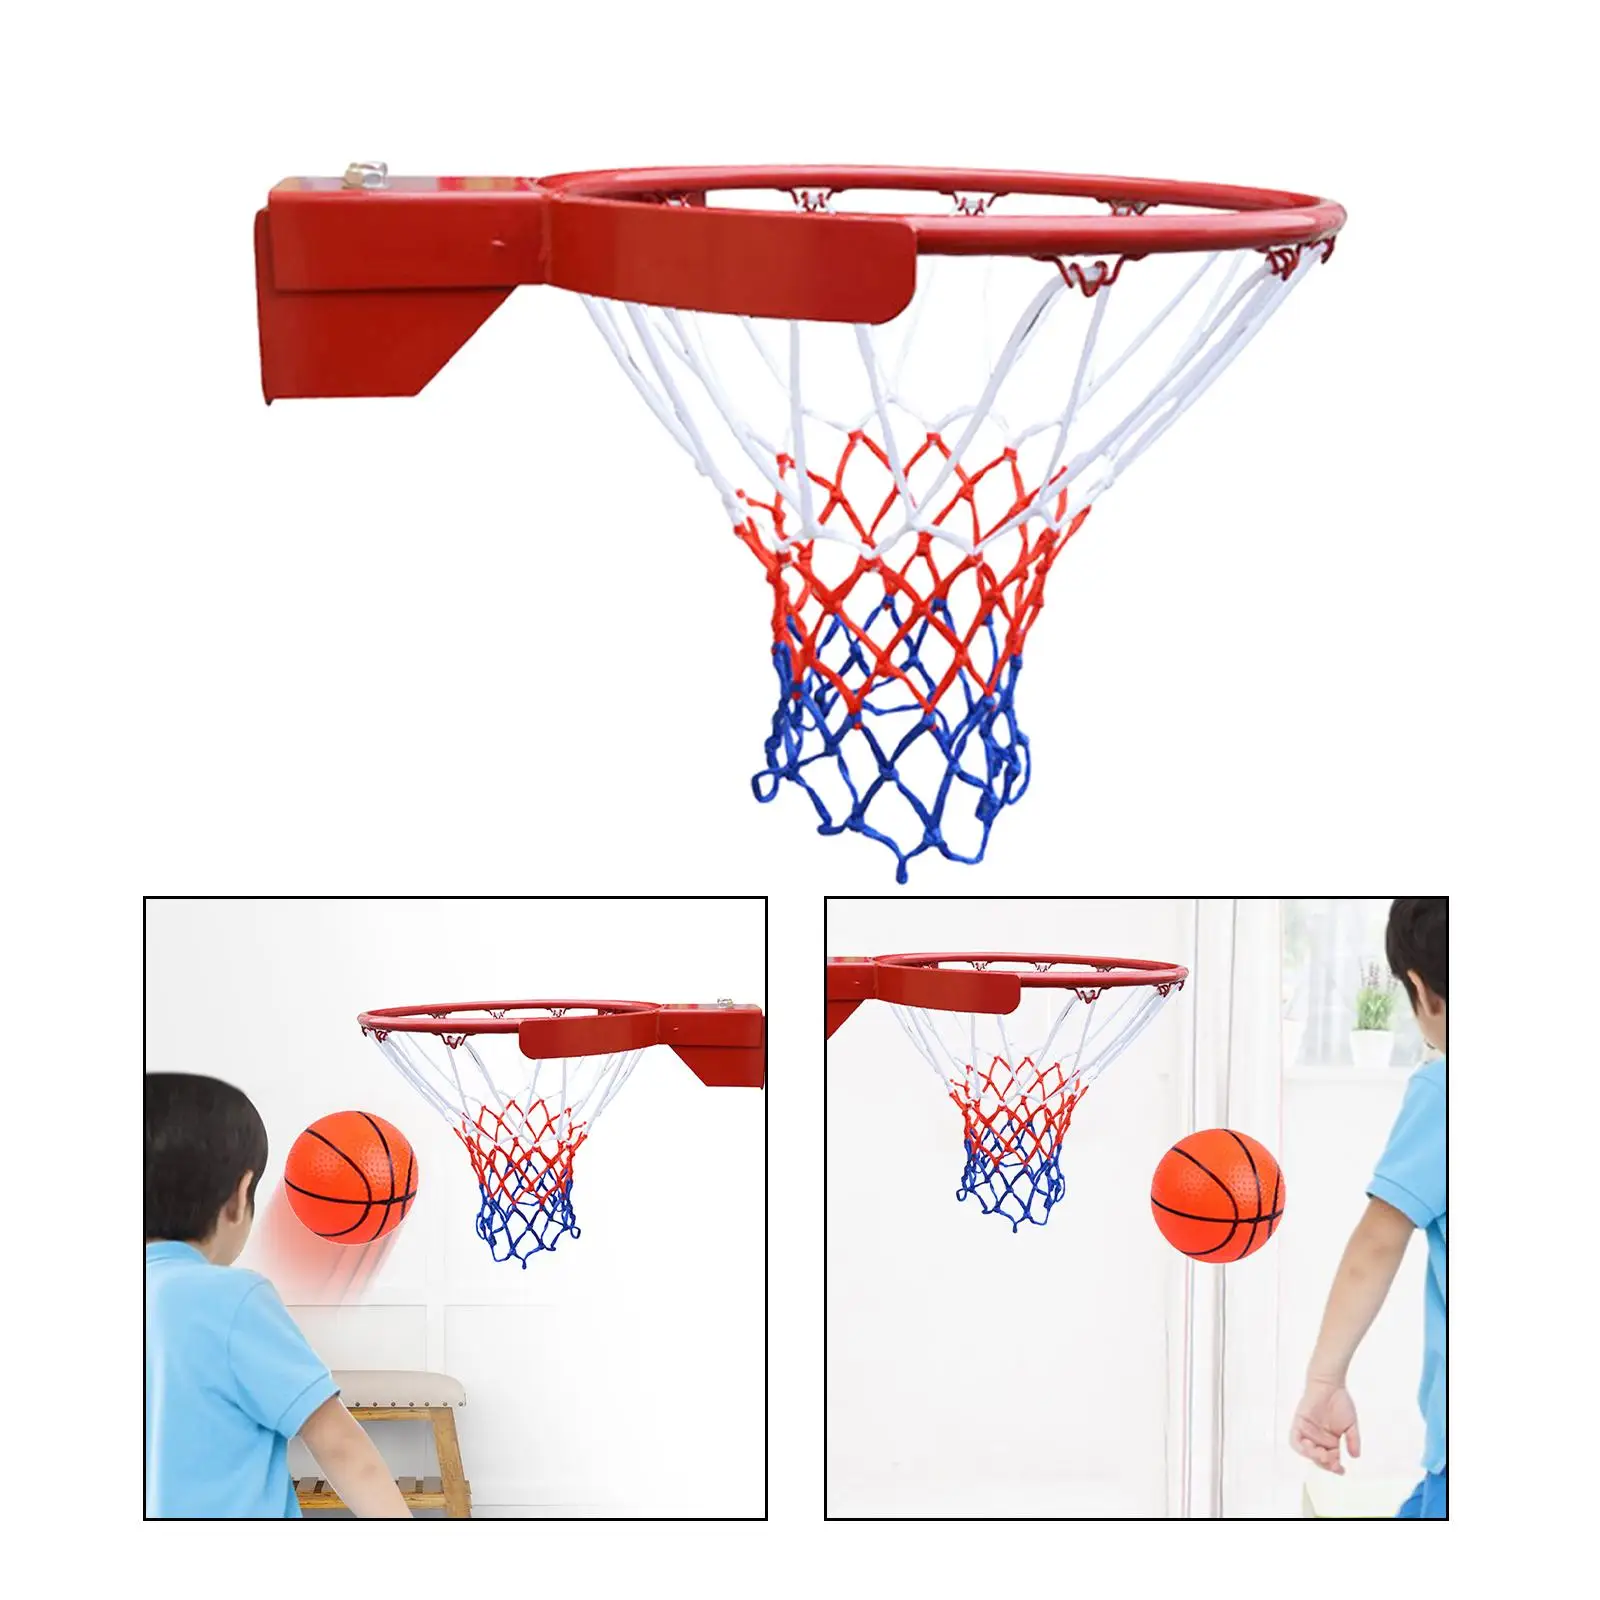 

Баскетбольное кольцо и сетчатый набор для занятий спортом в помещении и на открытом воздухе, высота 45 см, стандартный обод для взрослых, для бассейна, для сообщественных игровых площадок